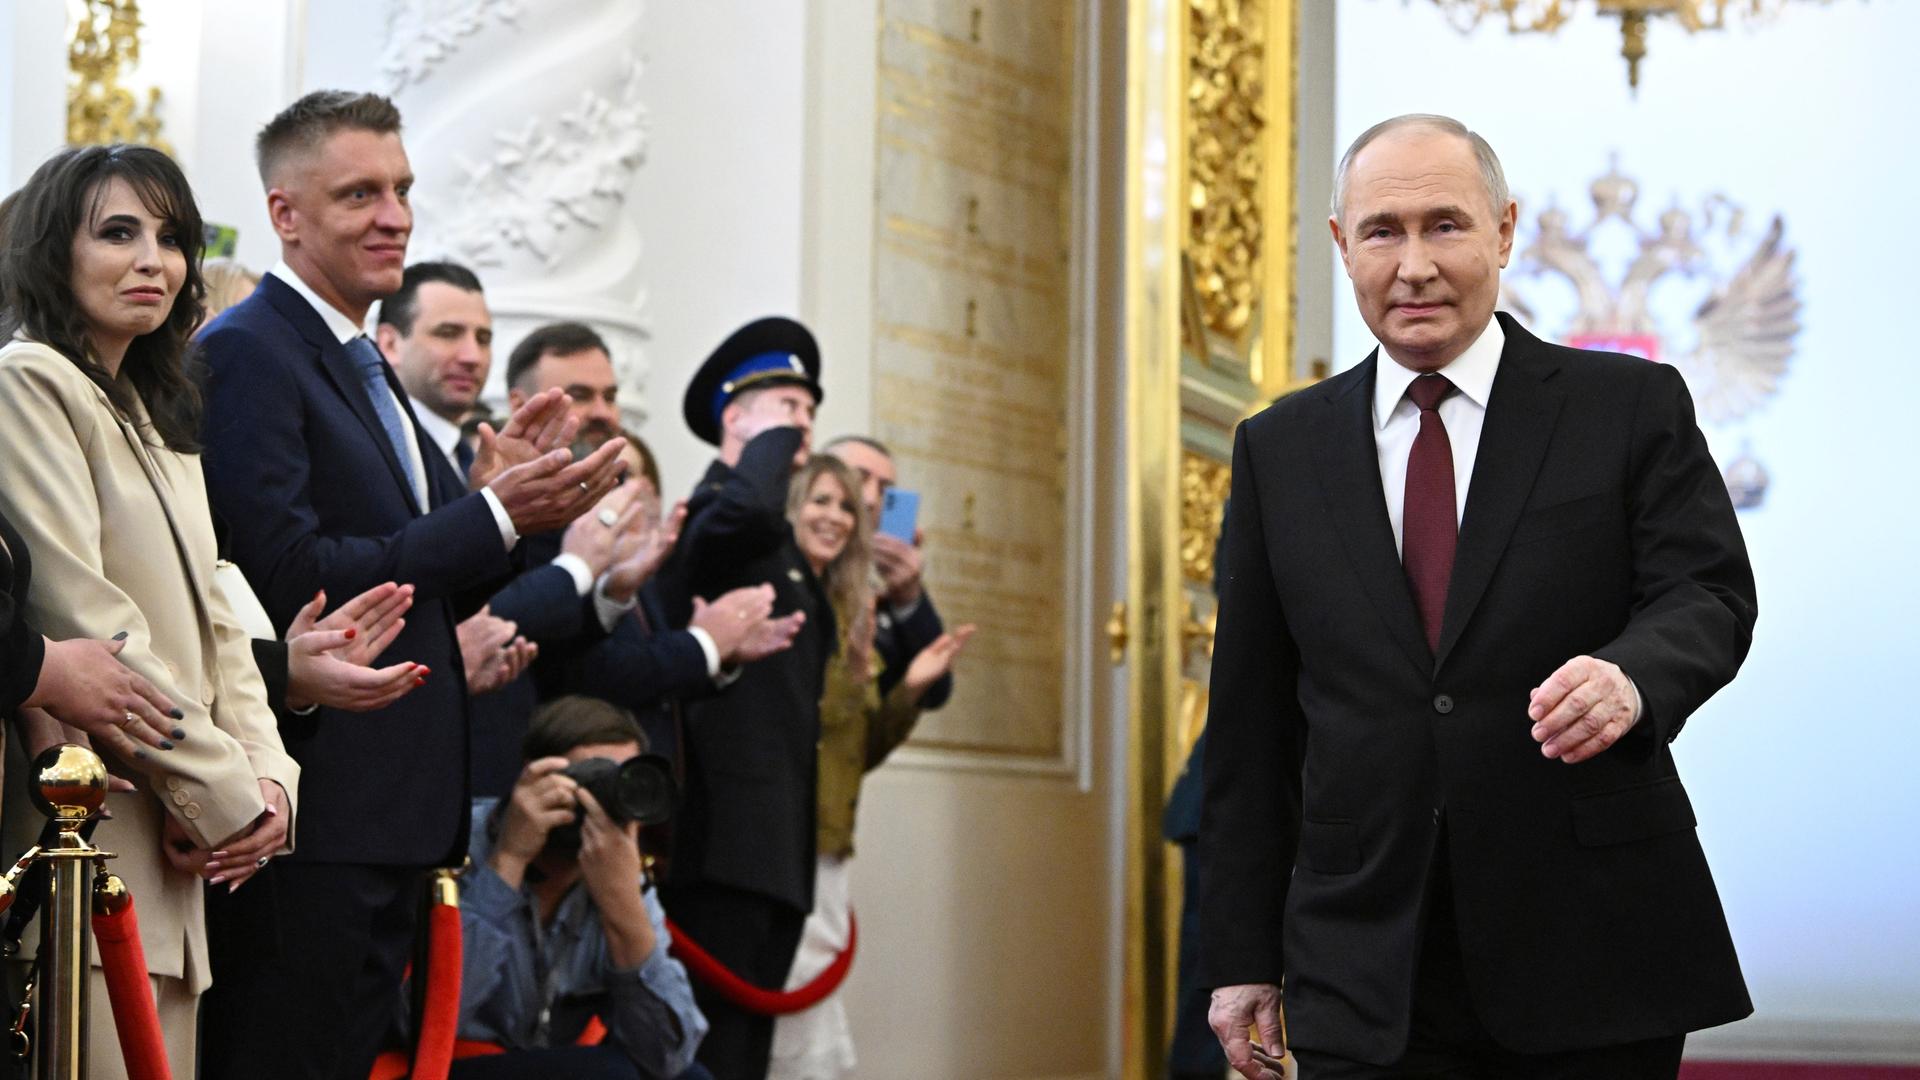 Wladimir Putin läuft durch eine prunkvolle Halle. Zuschauer bejubeln ihn.